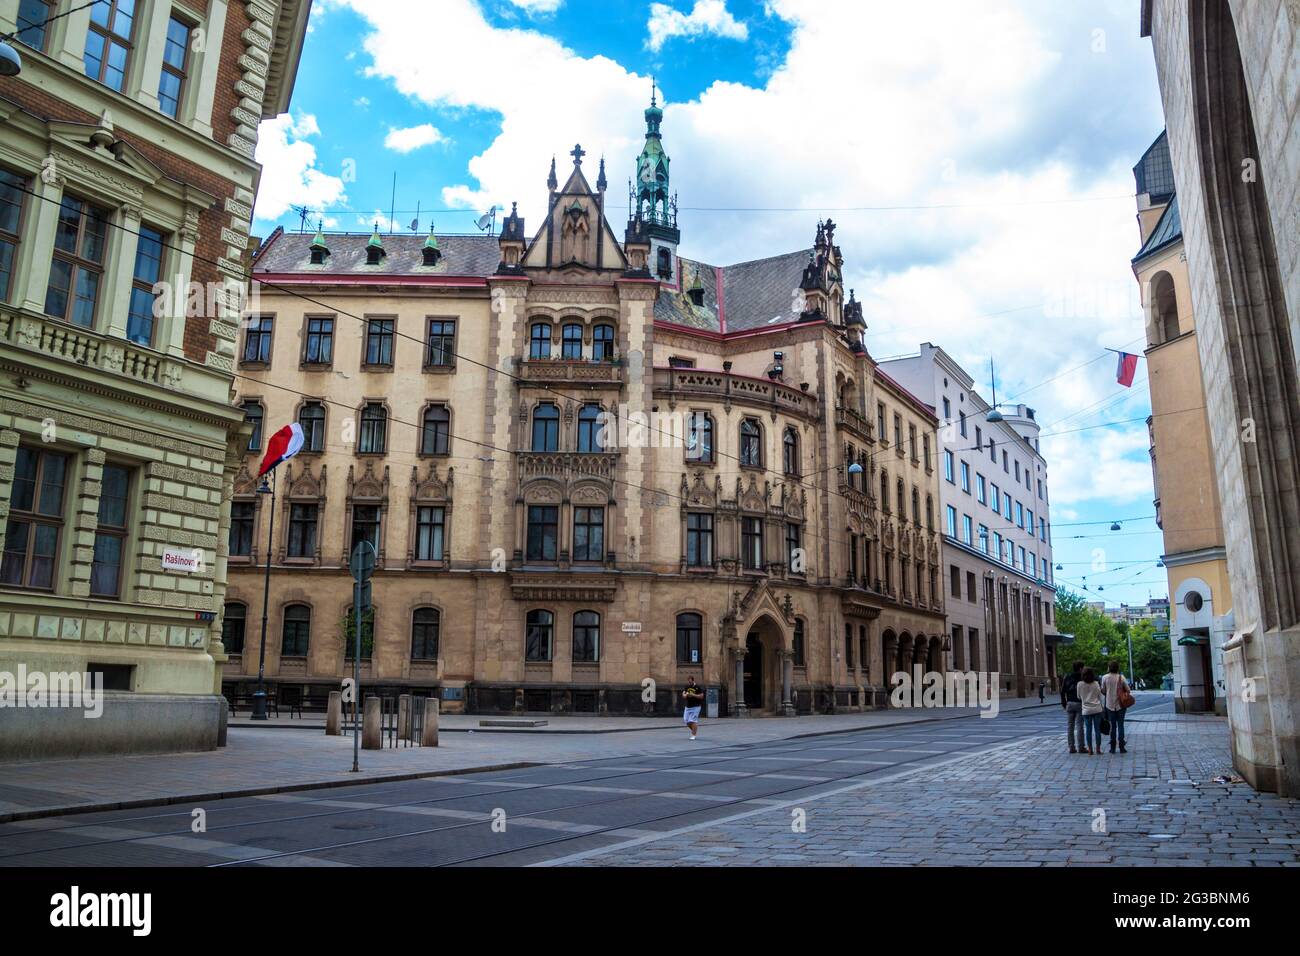 BRNO, REPUBBLICA CECA - 8 MAGGIO: Vista di una strada a Brno, Repubblica Ceca l'8 maggio 2014. Brno è la seconda città più grande della Repubblica Ceca. Foto Stock